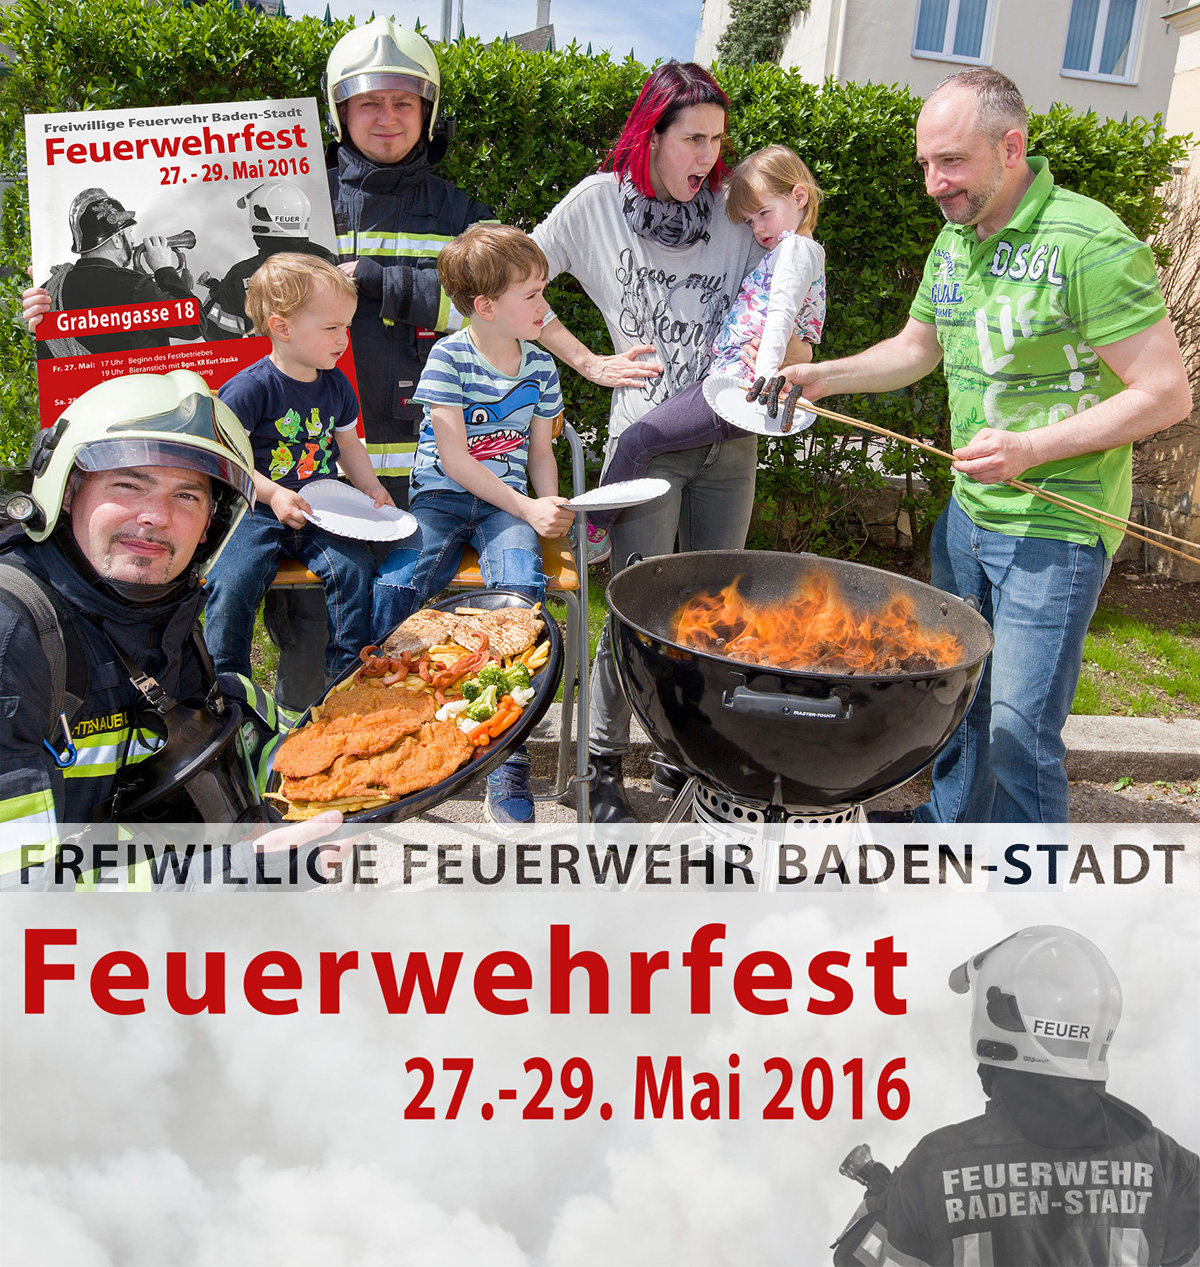 Feuerwehrfest Baden-Stadt vom 27. - 29.05.2016 - Grabengasse 18